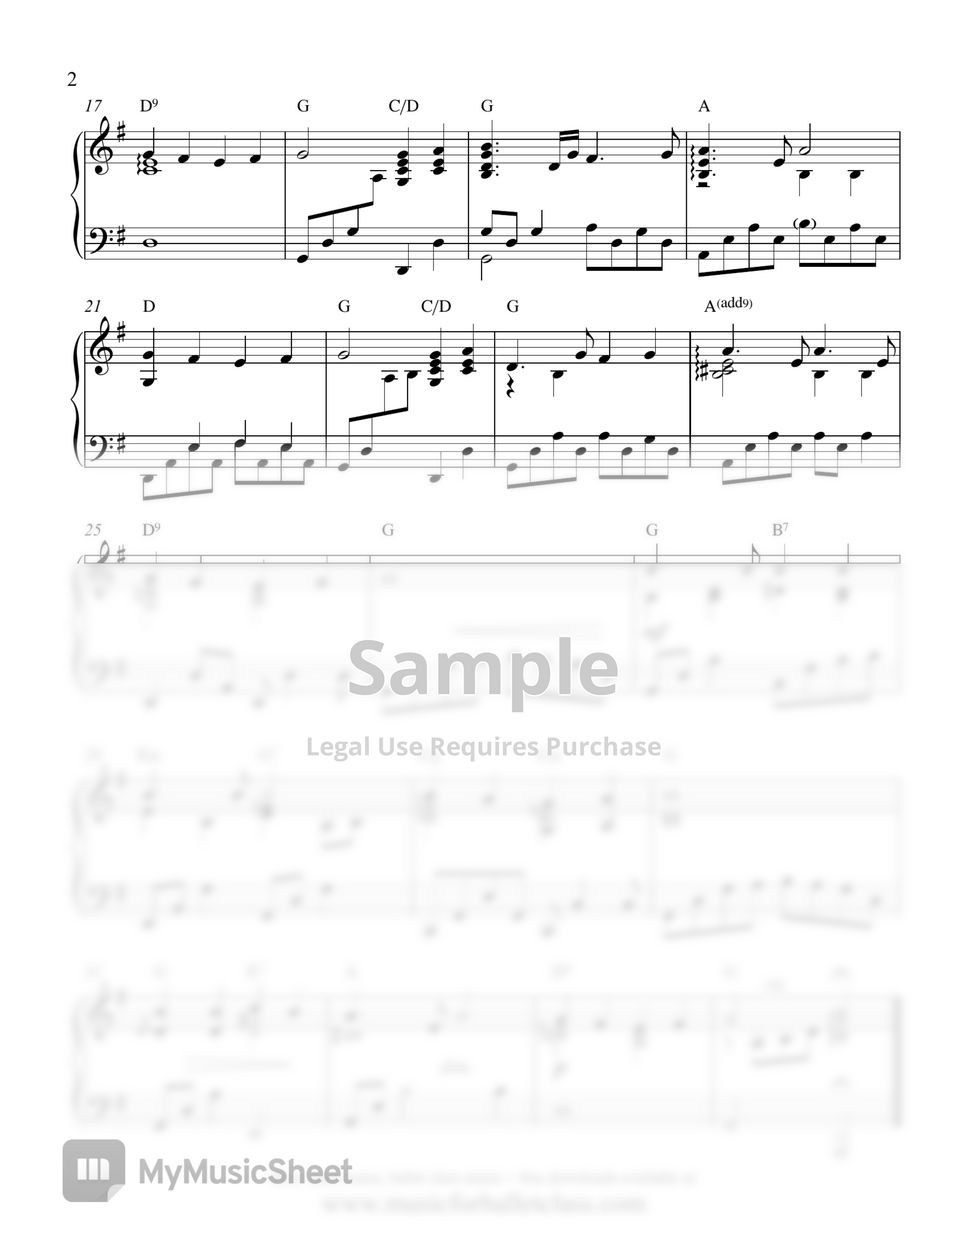 Love Me Tender (Elvis Presley) - Easy Piano Sheet Music